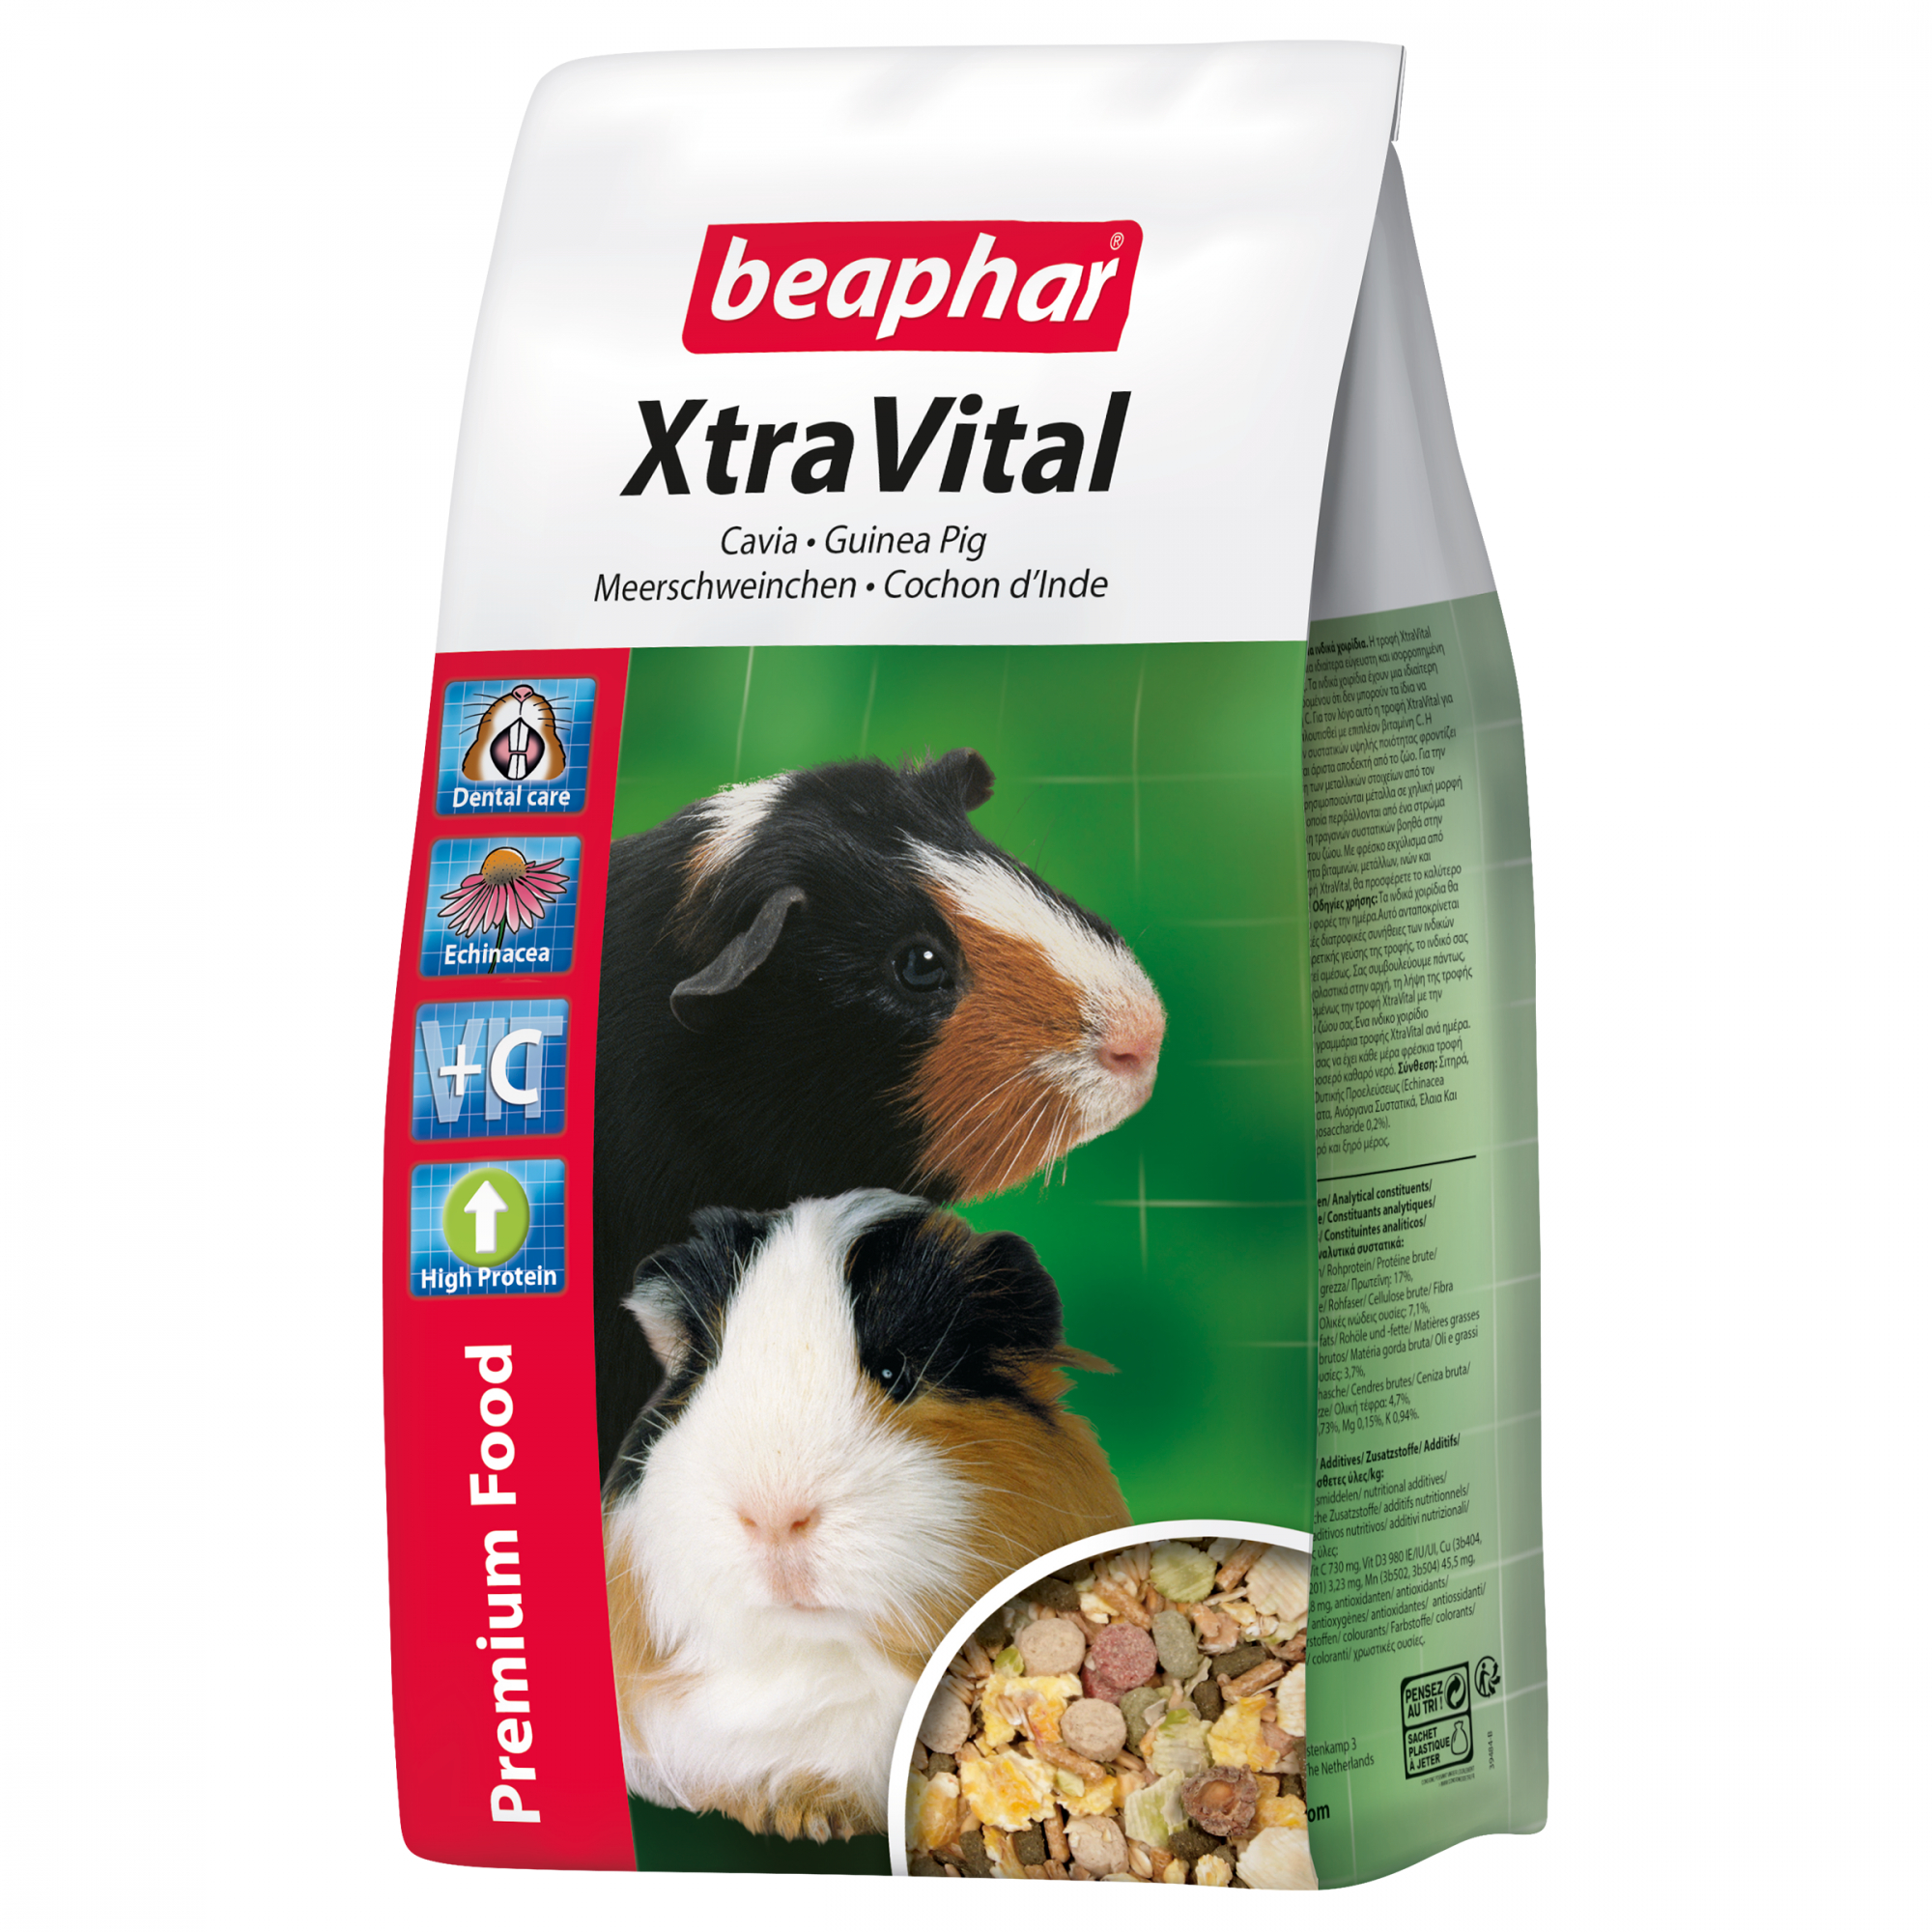 XtraVital, alimentazione premium porcellino d'India